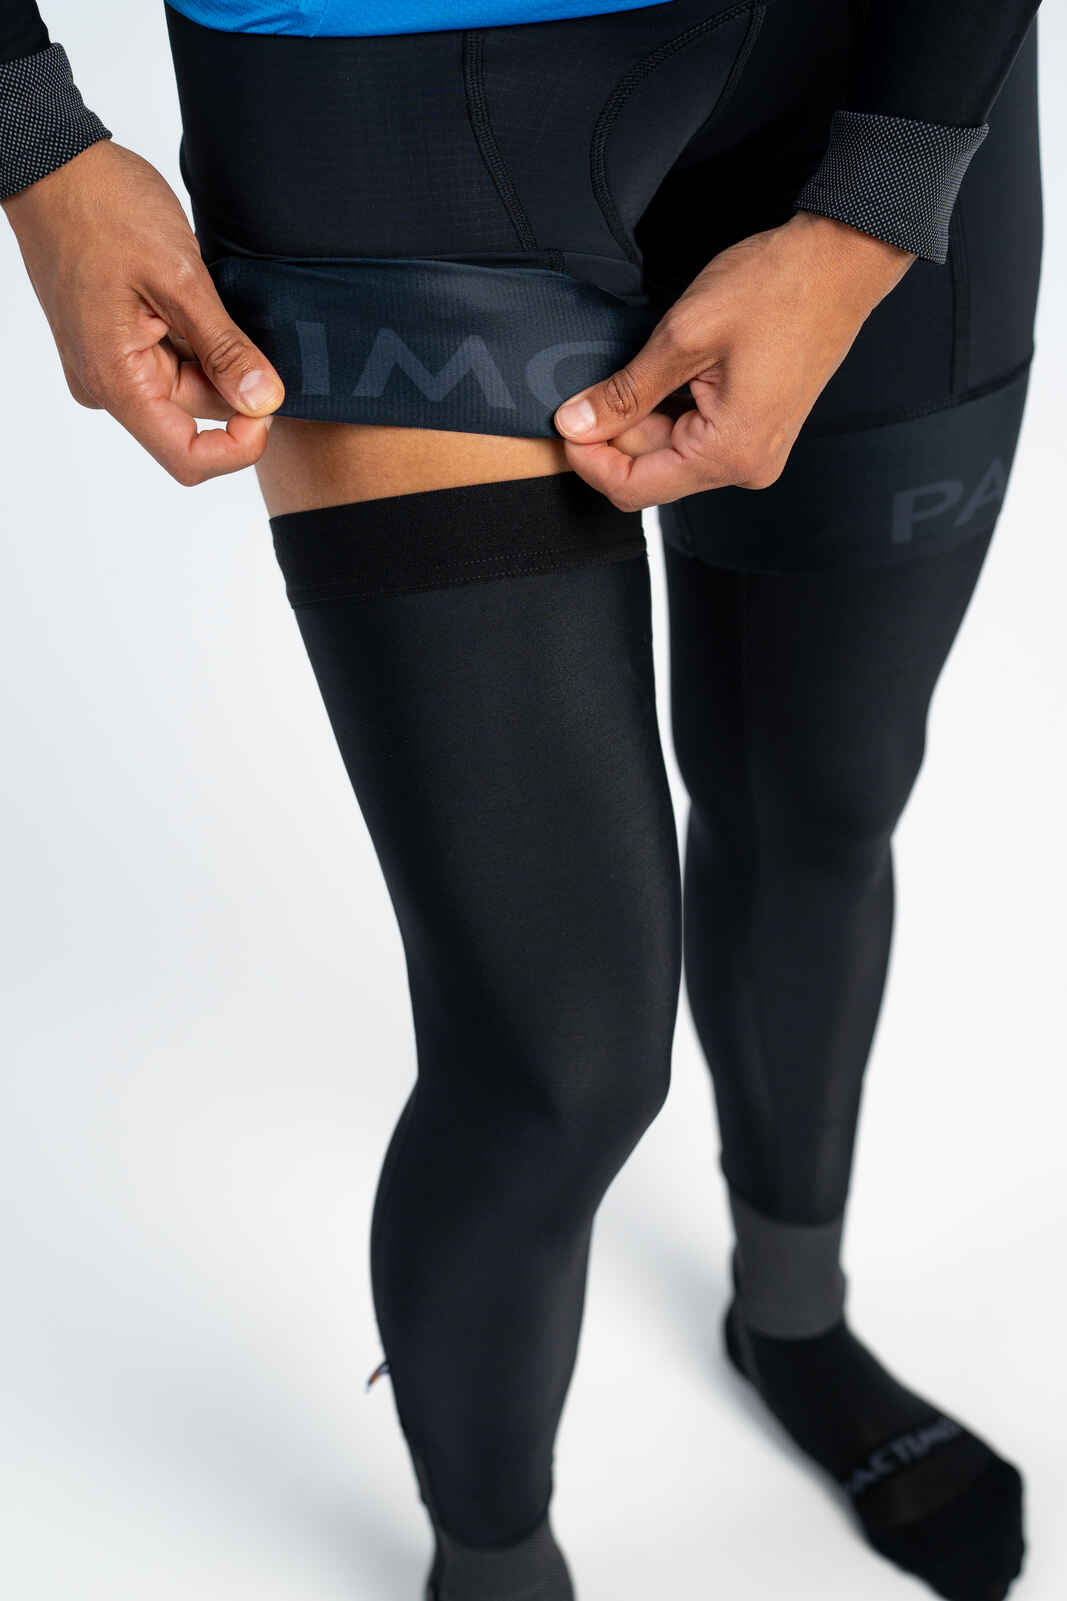 Thermal Reflective Cycling Leg Warmers - Under Bib Shorts